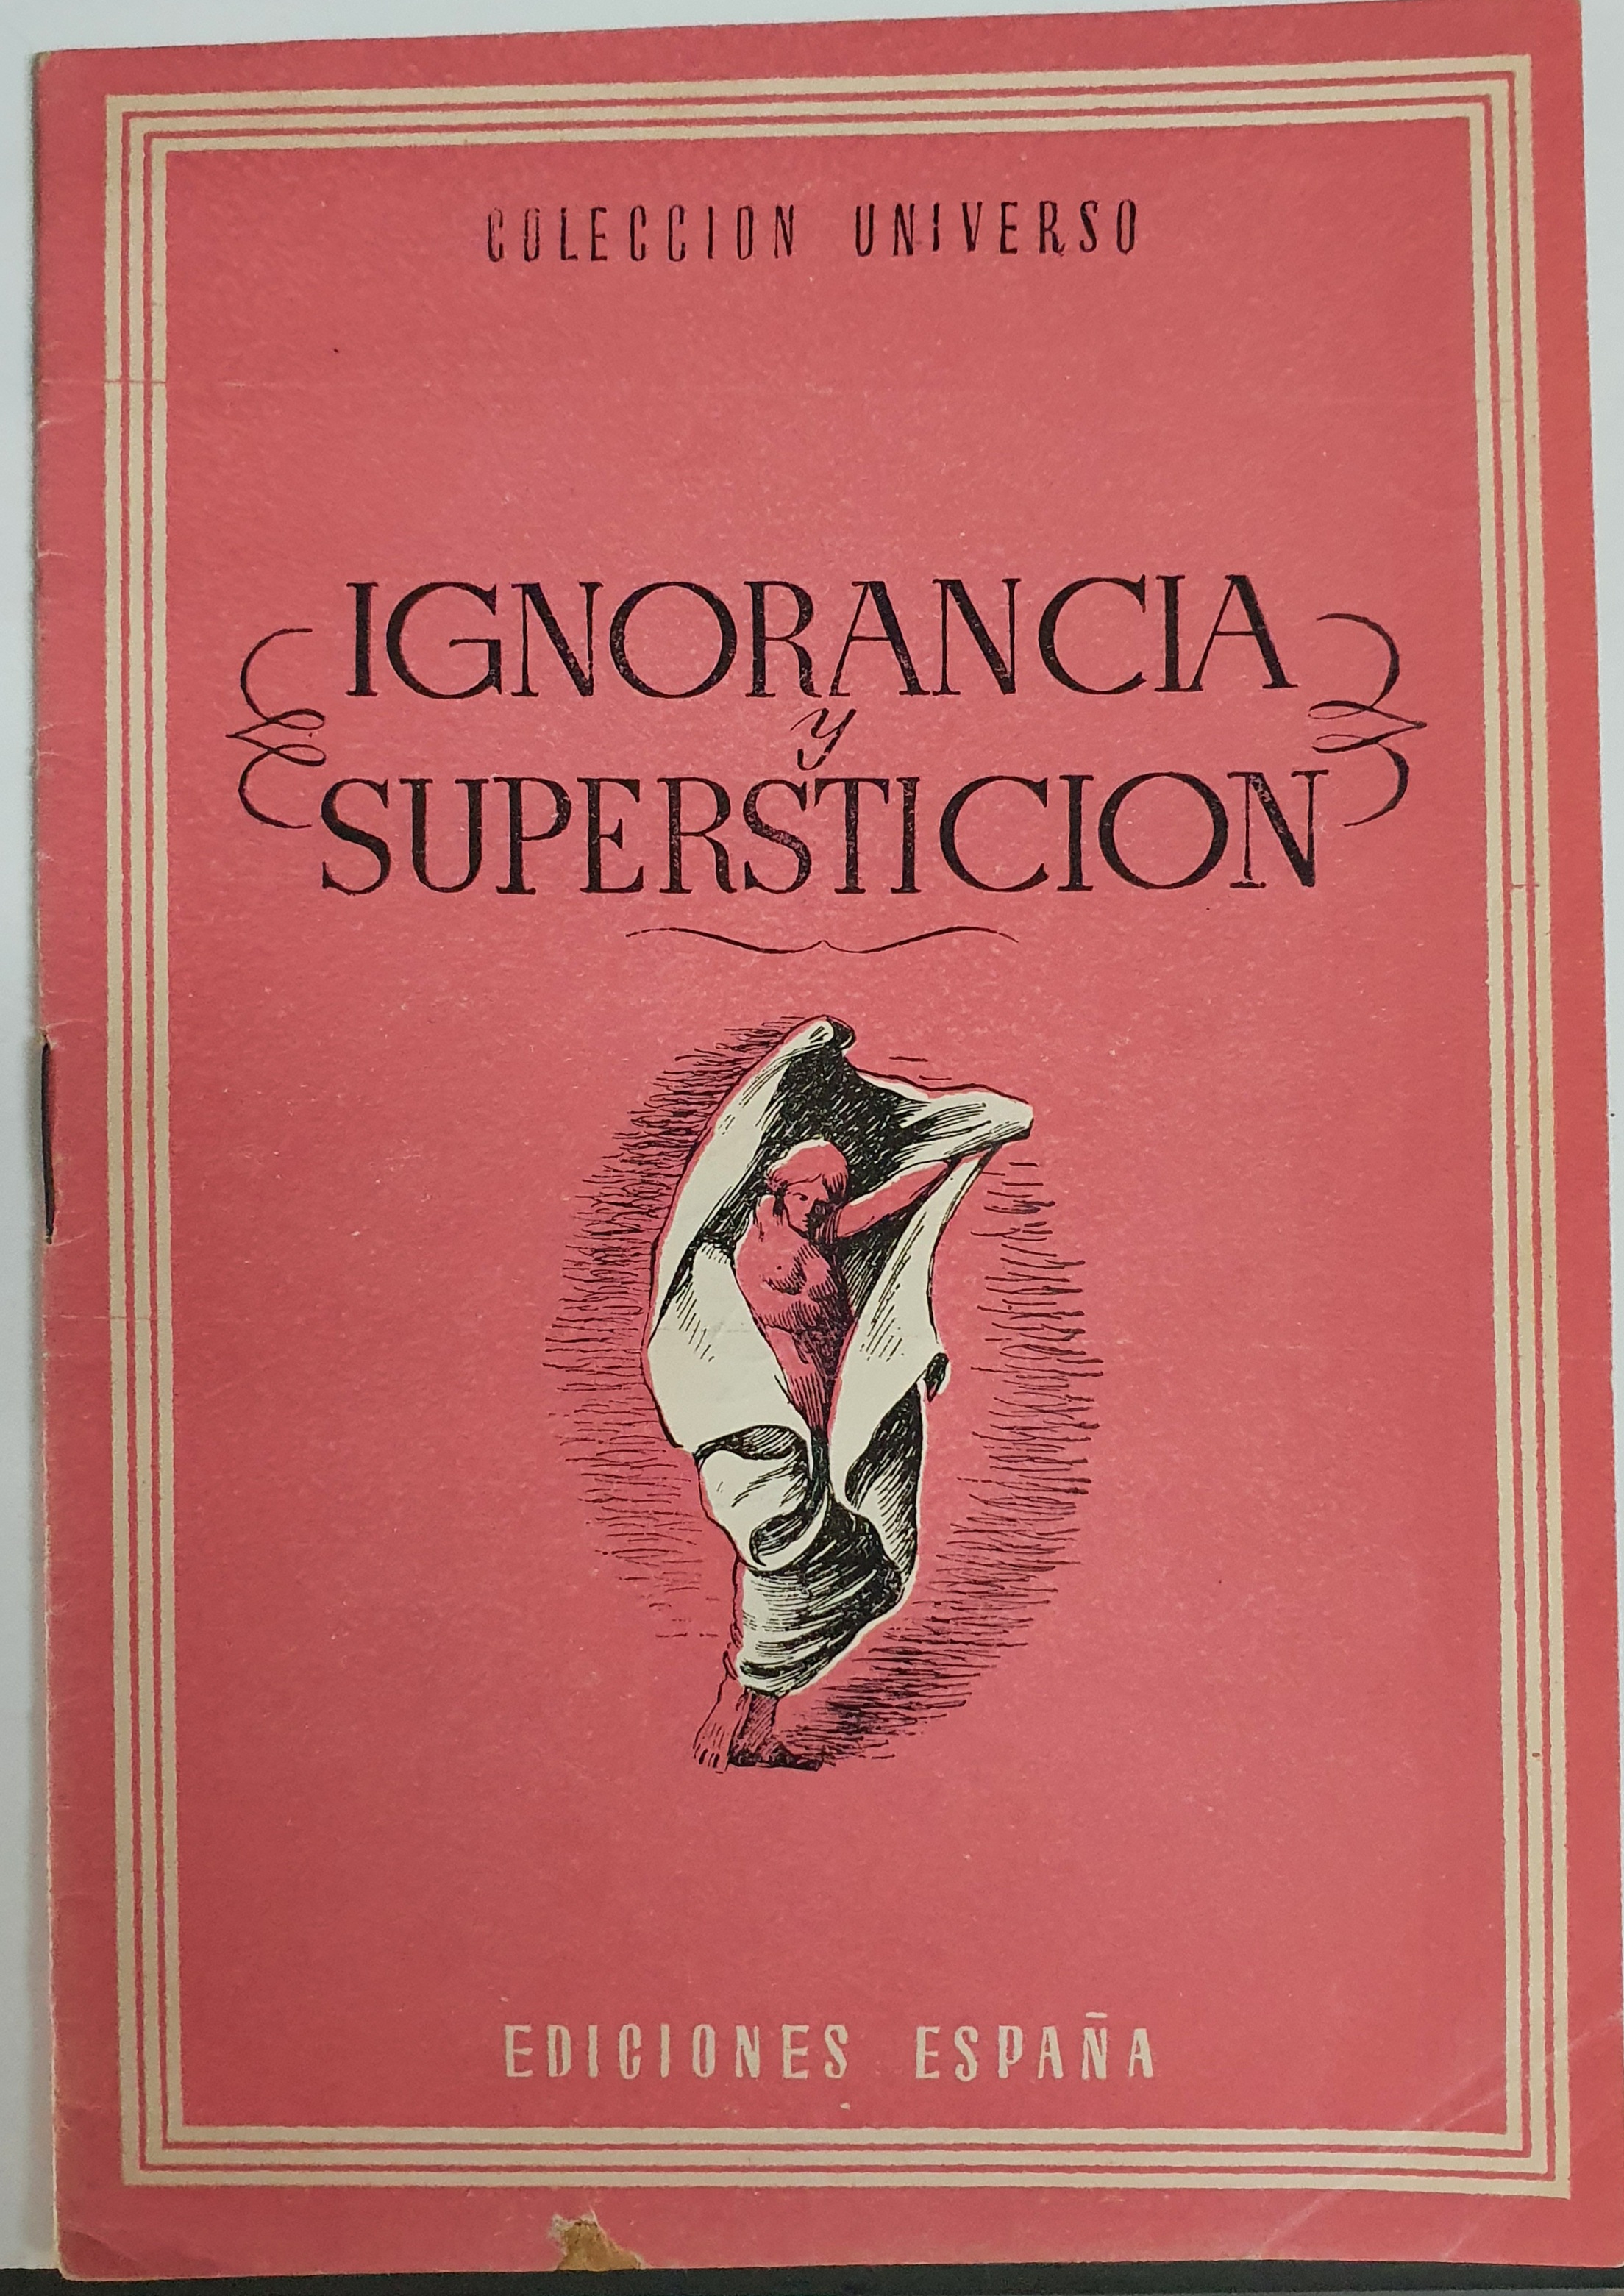 Colección Universo. Edic. España. Ignorancia y superstición (16X11)